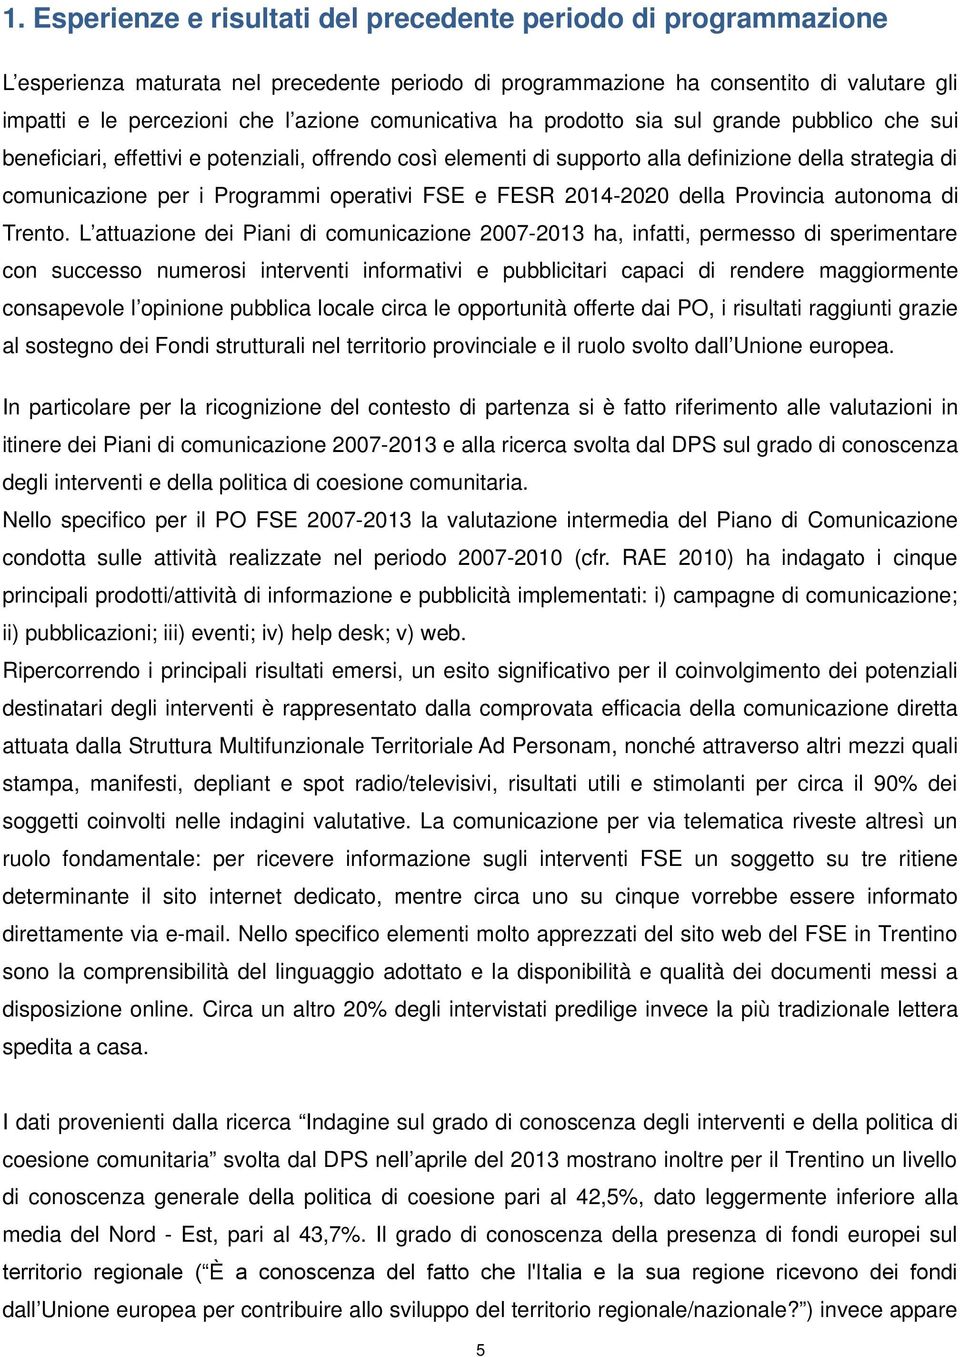 operativi FSE e FESR 2014-2020 della Provincia autonoma di Trento.